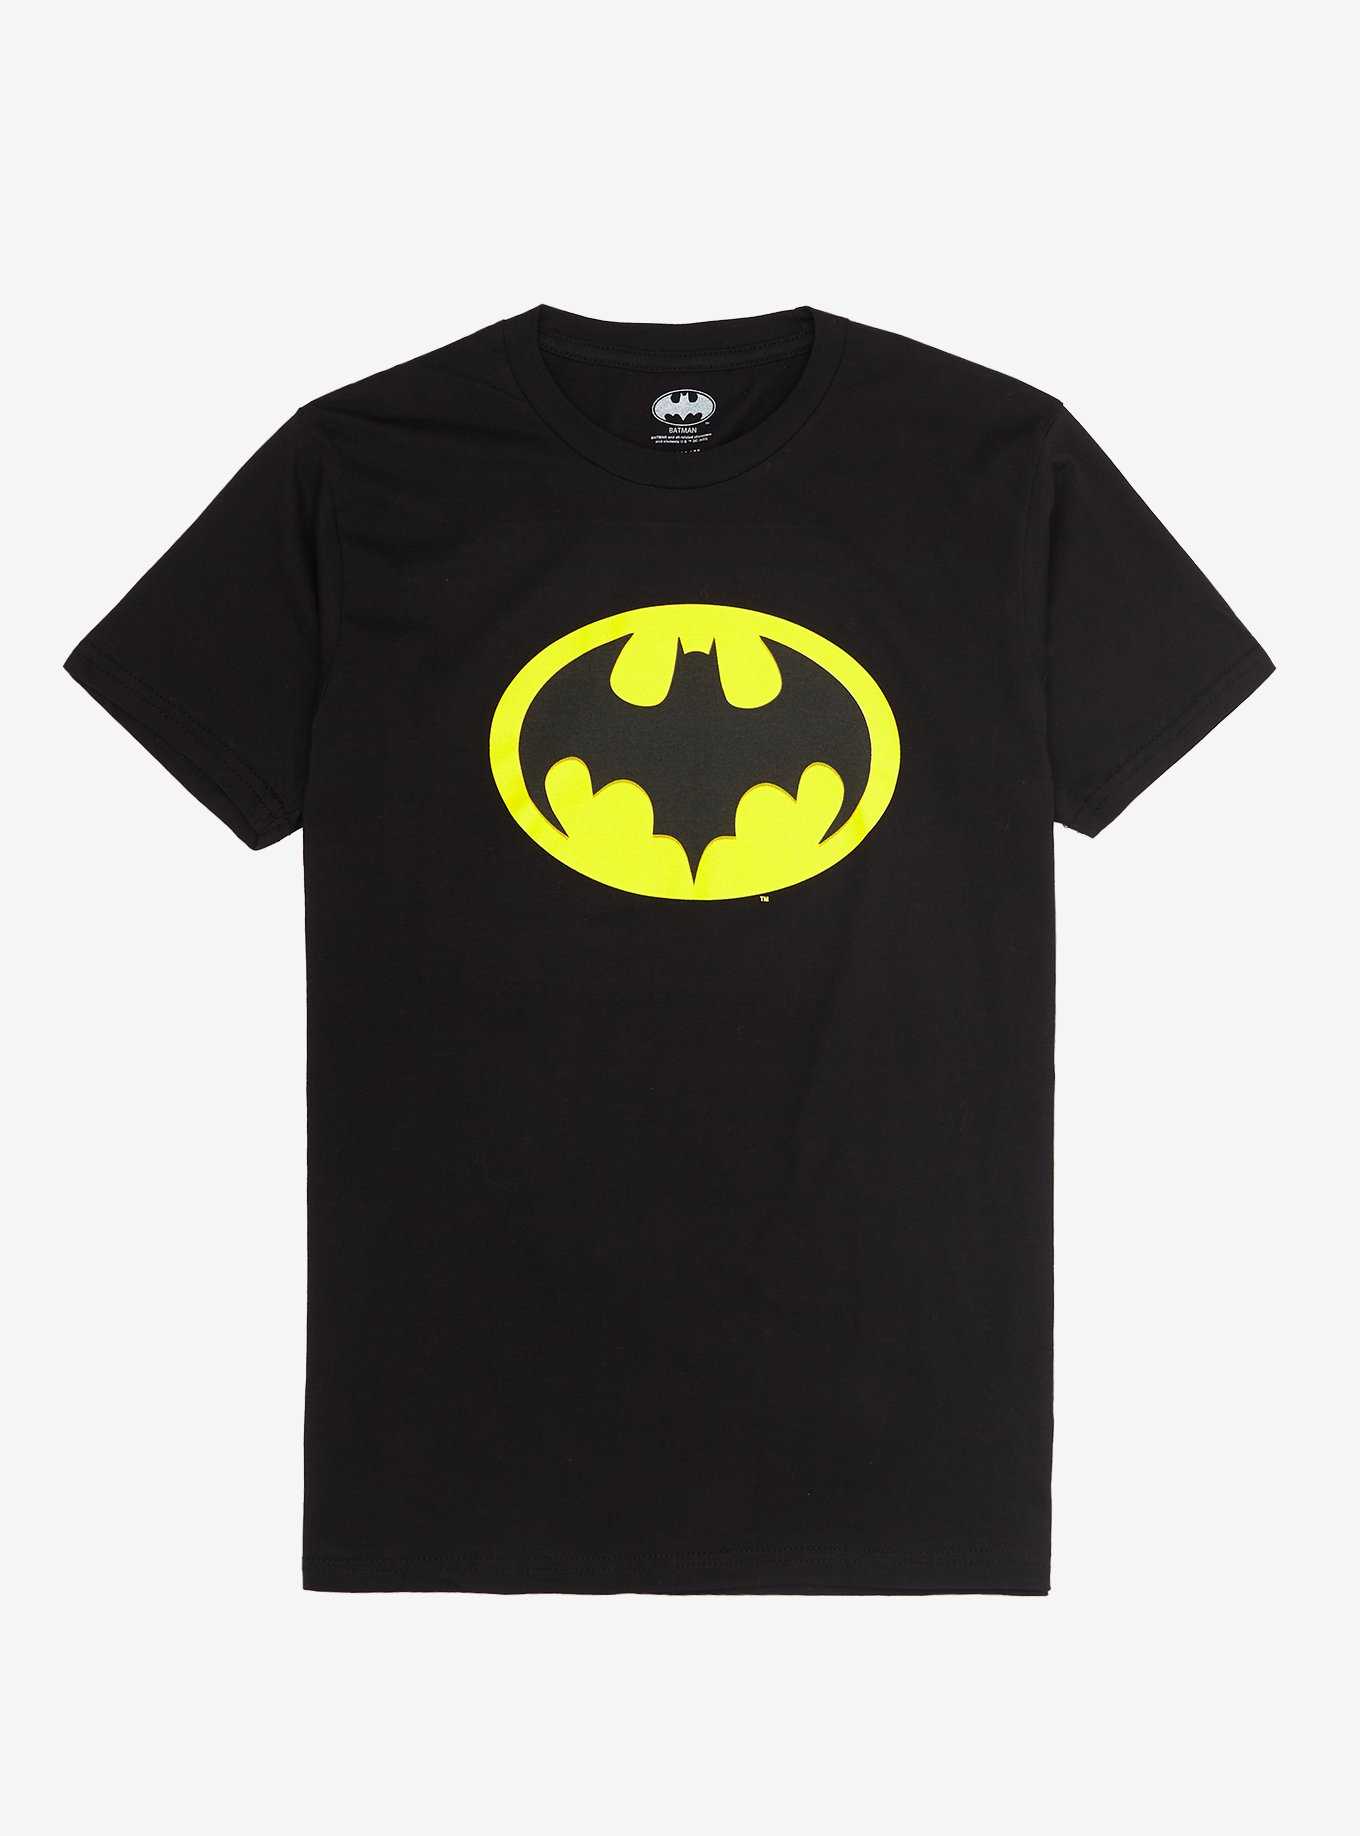 The Flash \'89 Batman Hot T-Shirt | Logo DC Comics Topic